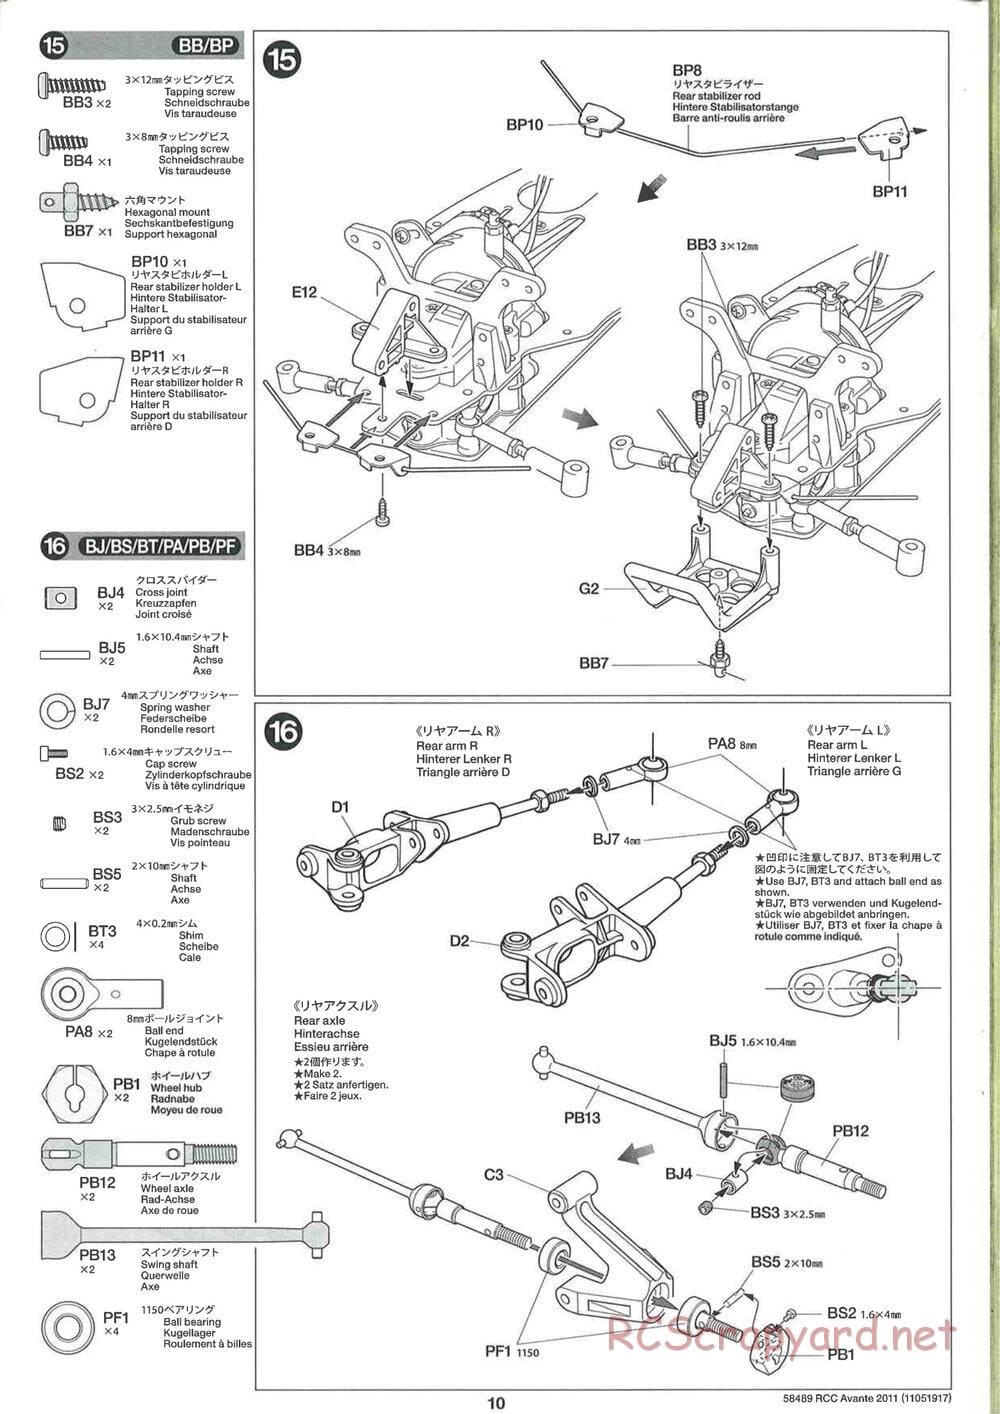 Tamiya - Avante 2011 - AV Chassis - Manual - Page 10